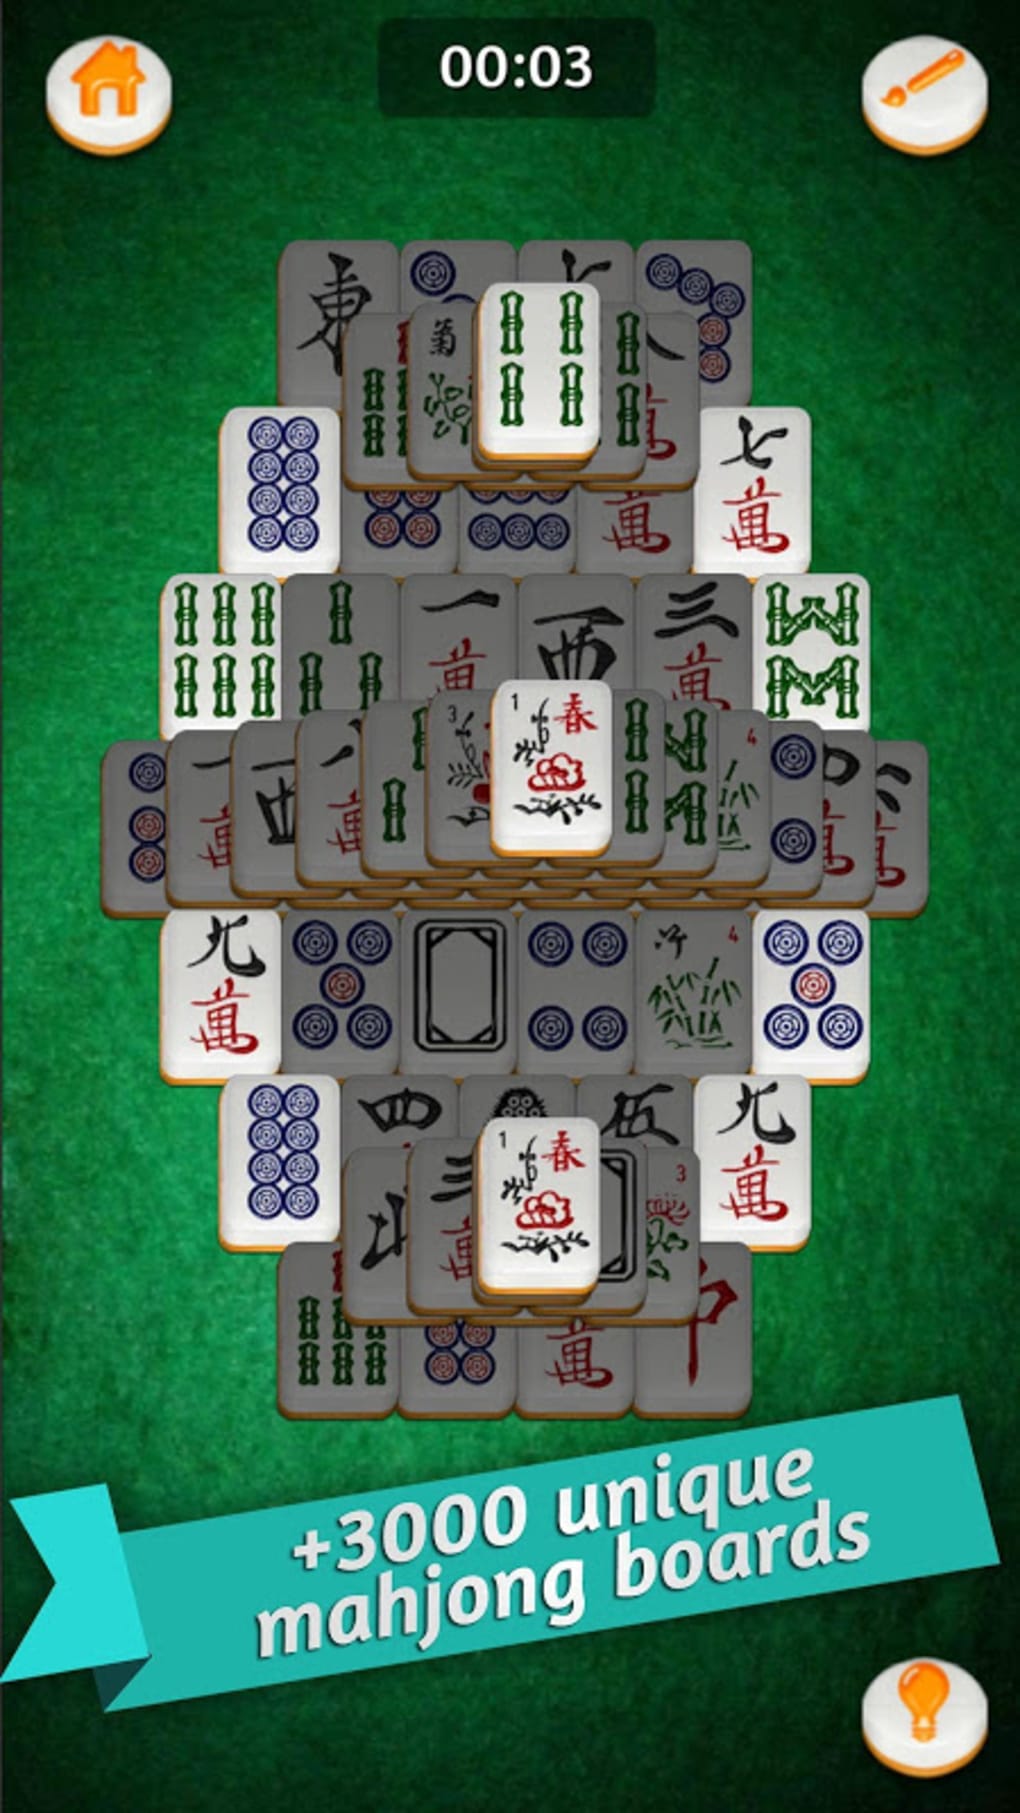 LLevate gratis el juego Mahjong Gold »